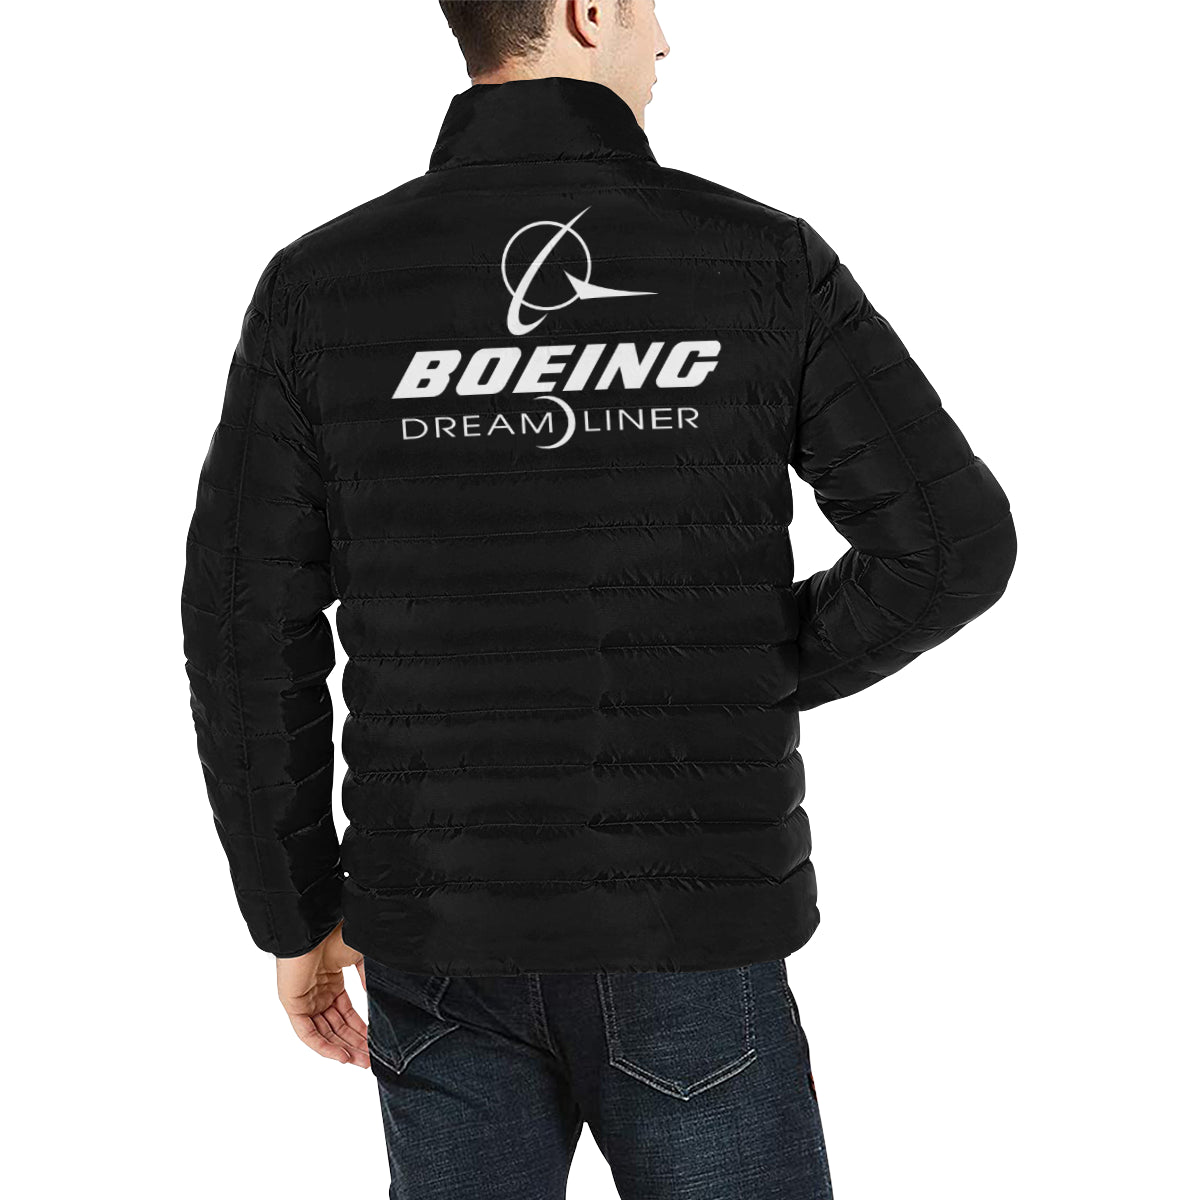 BOEING- DREAM LINER Men's Stand Collar Padded Jacket e-joyer